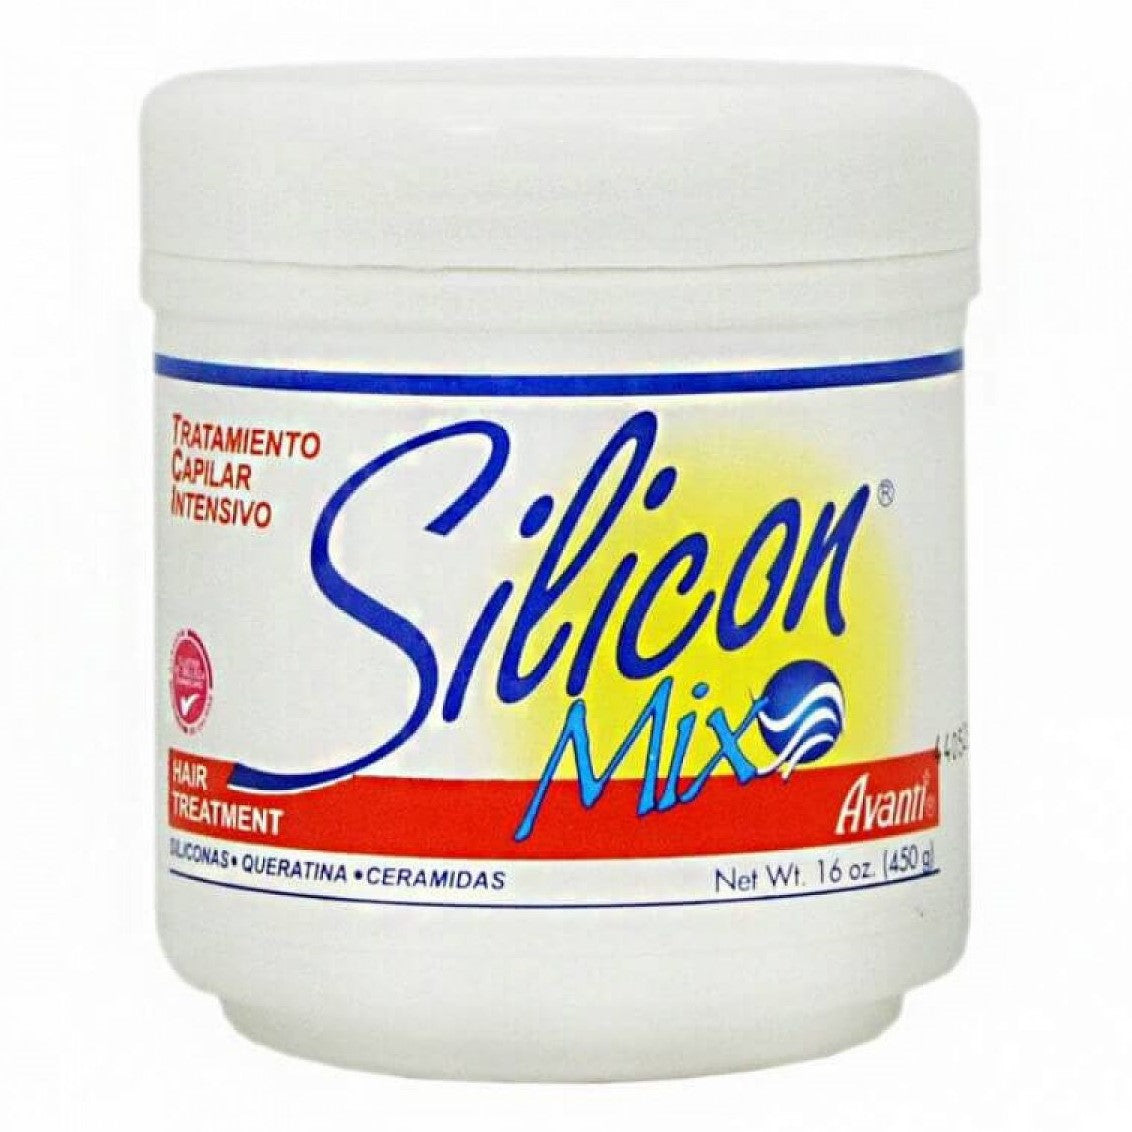 Silicon Mix Hair Treatment 450G - Verwandeln Sie Ihre Haare - Geben Sie Ihren Haaren Liebe!